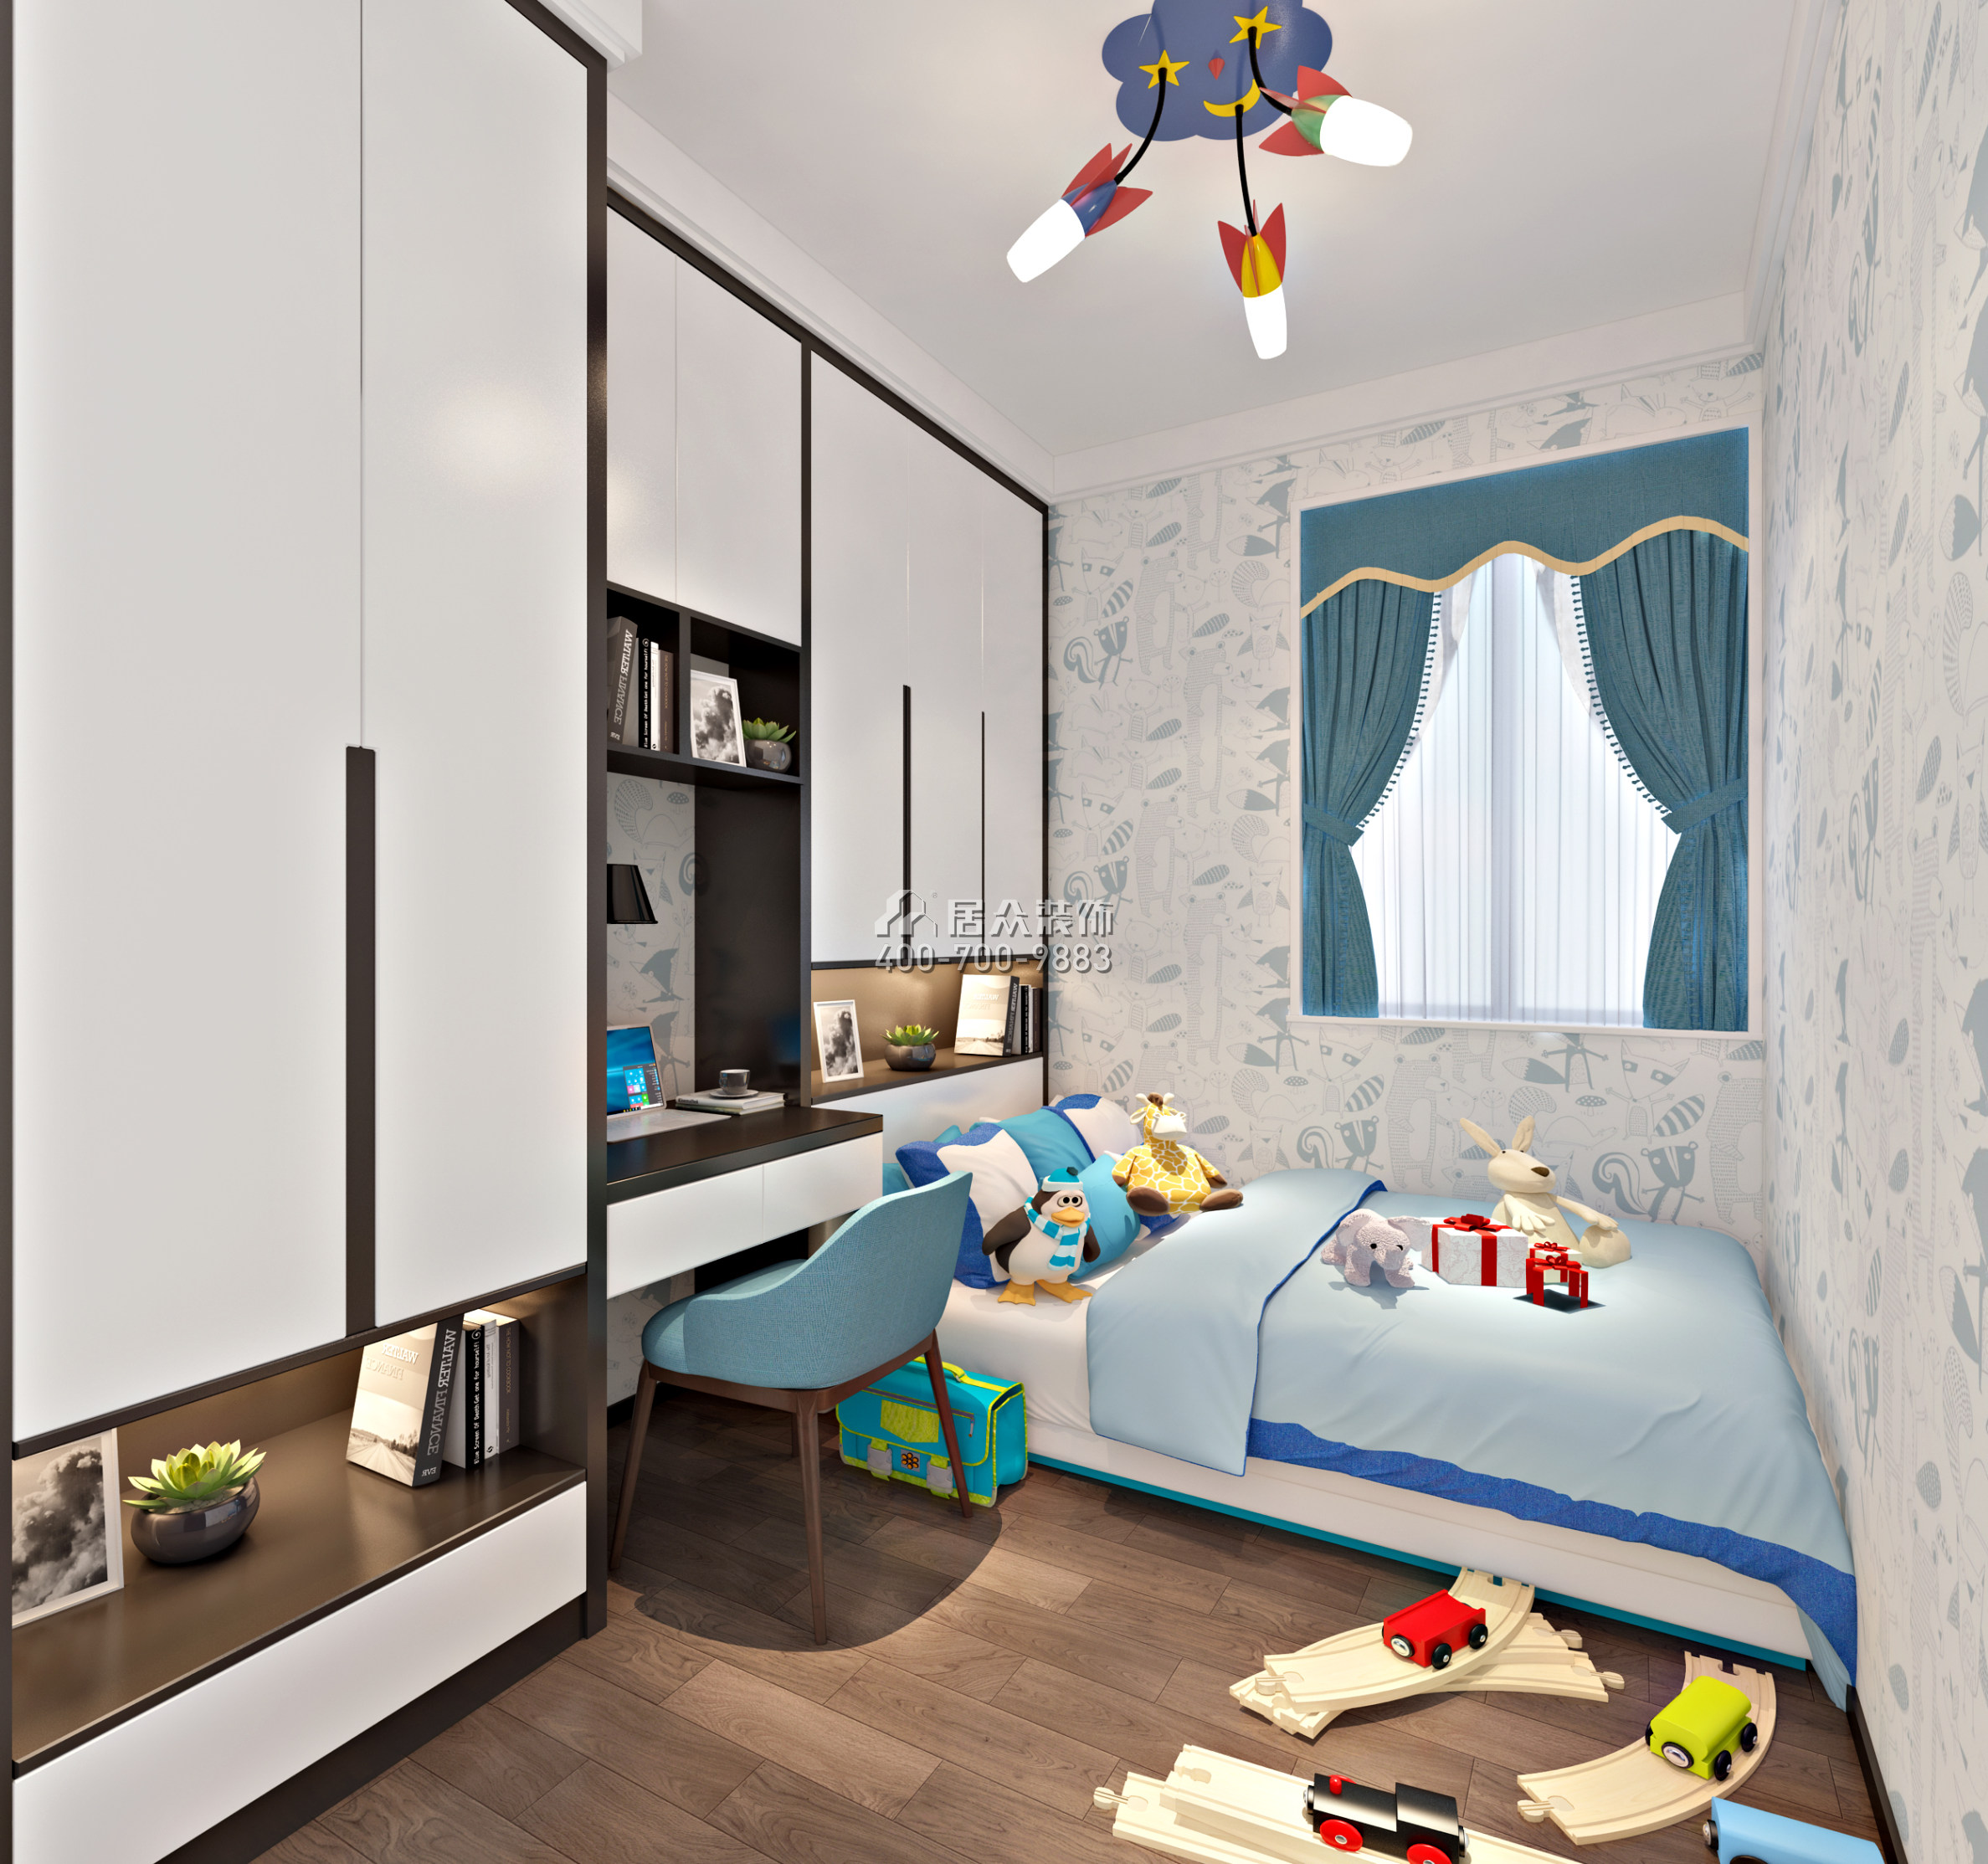 丽景城137平方米现代简约风格复式户型儿童房装修效果图